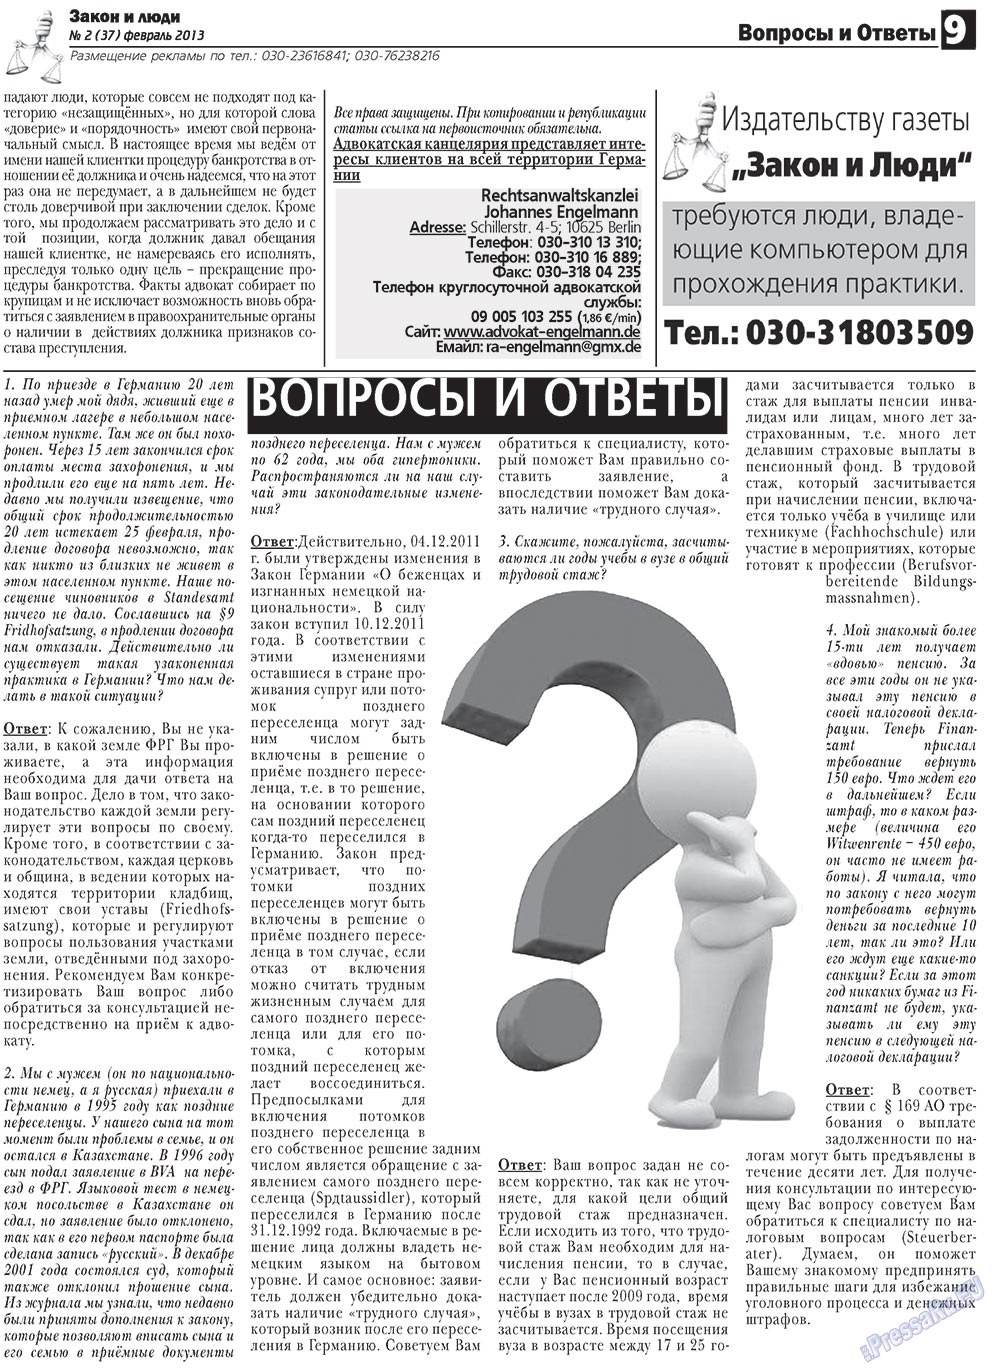 Закон и люди, газета. 2013 №2 стр.9